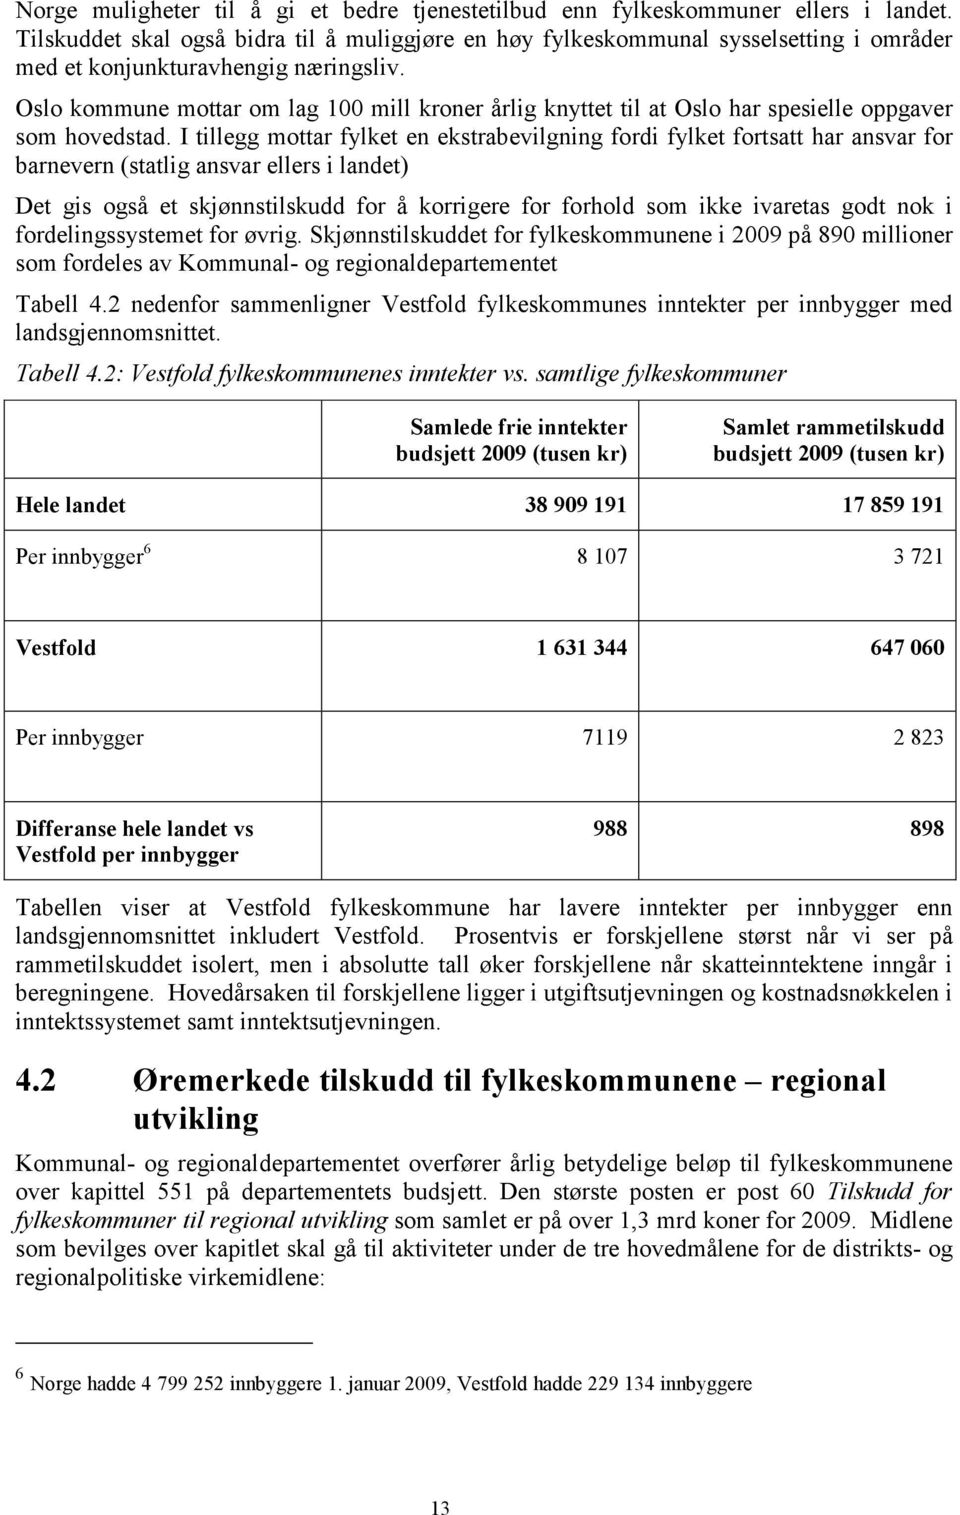 Oslo kommune mottar om lag 100 mill kroner årlig knyttet til at Oslo har spesielle oppgaver som hovedstad.